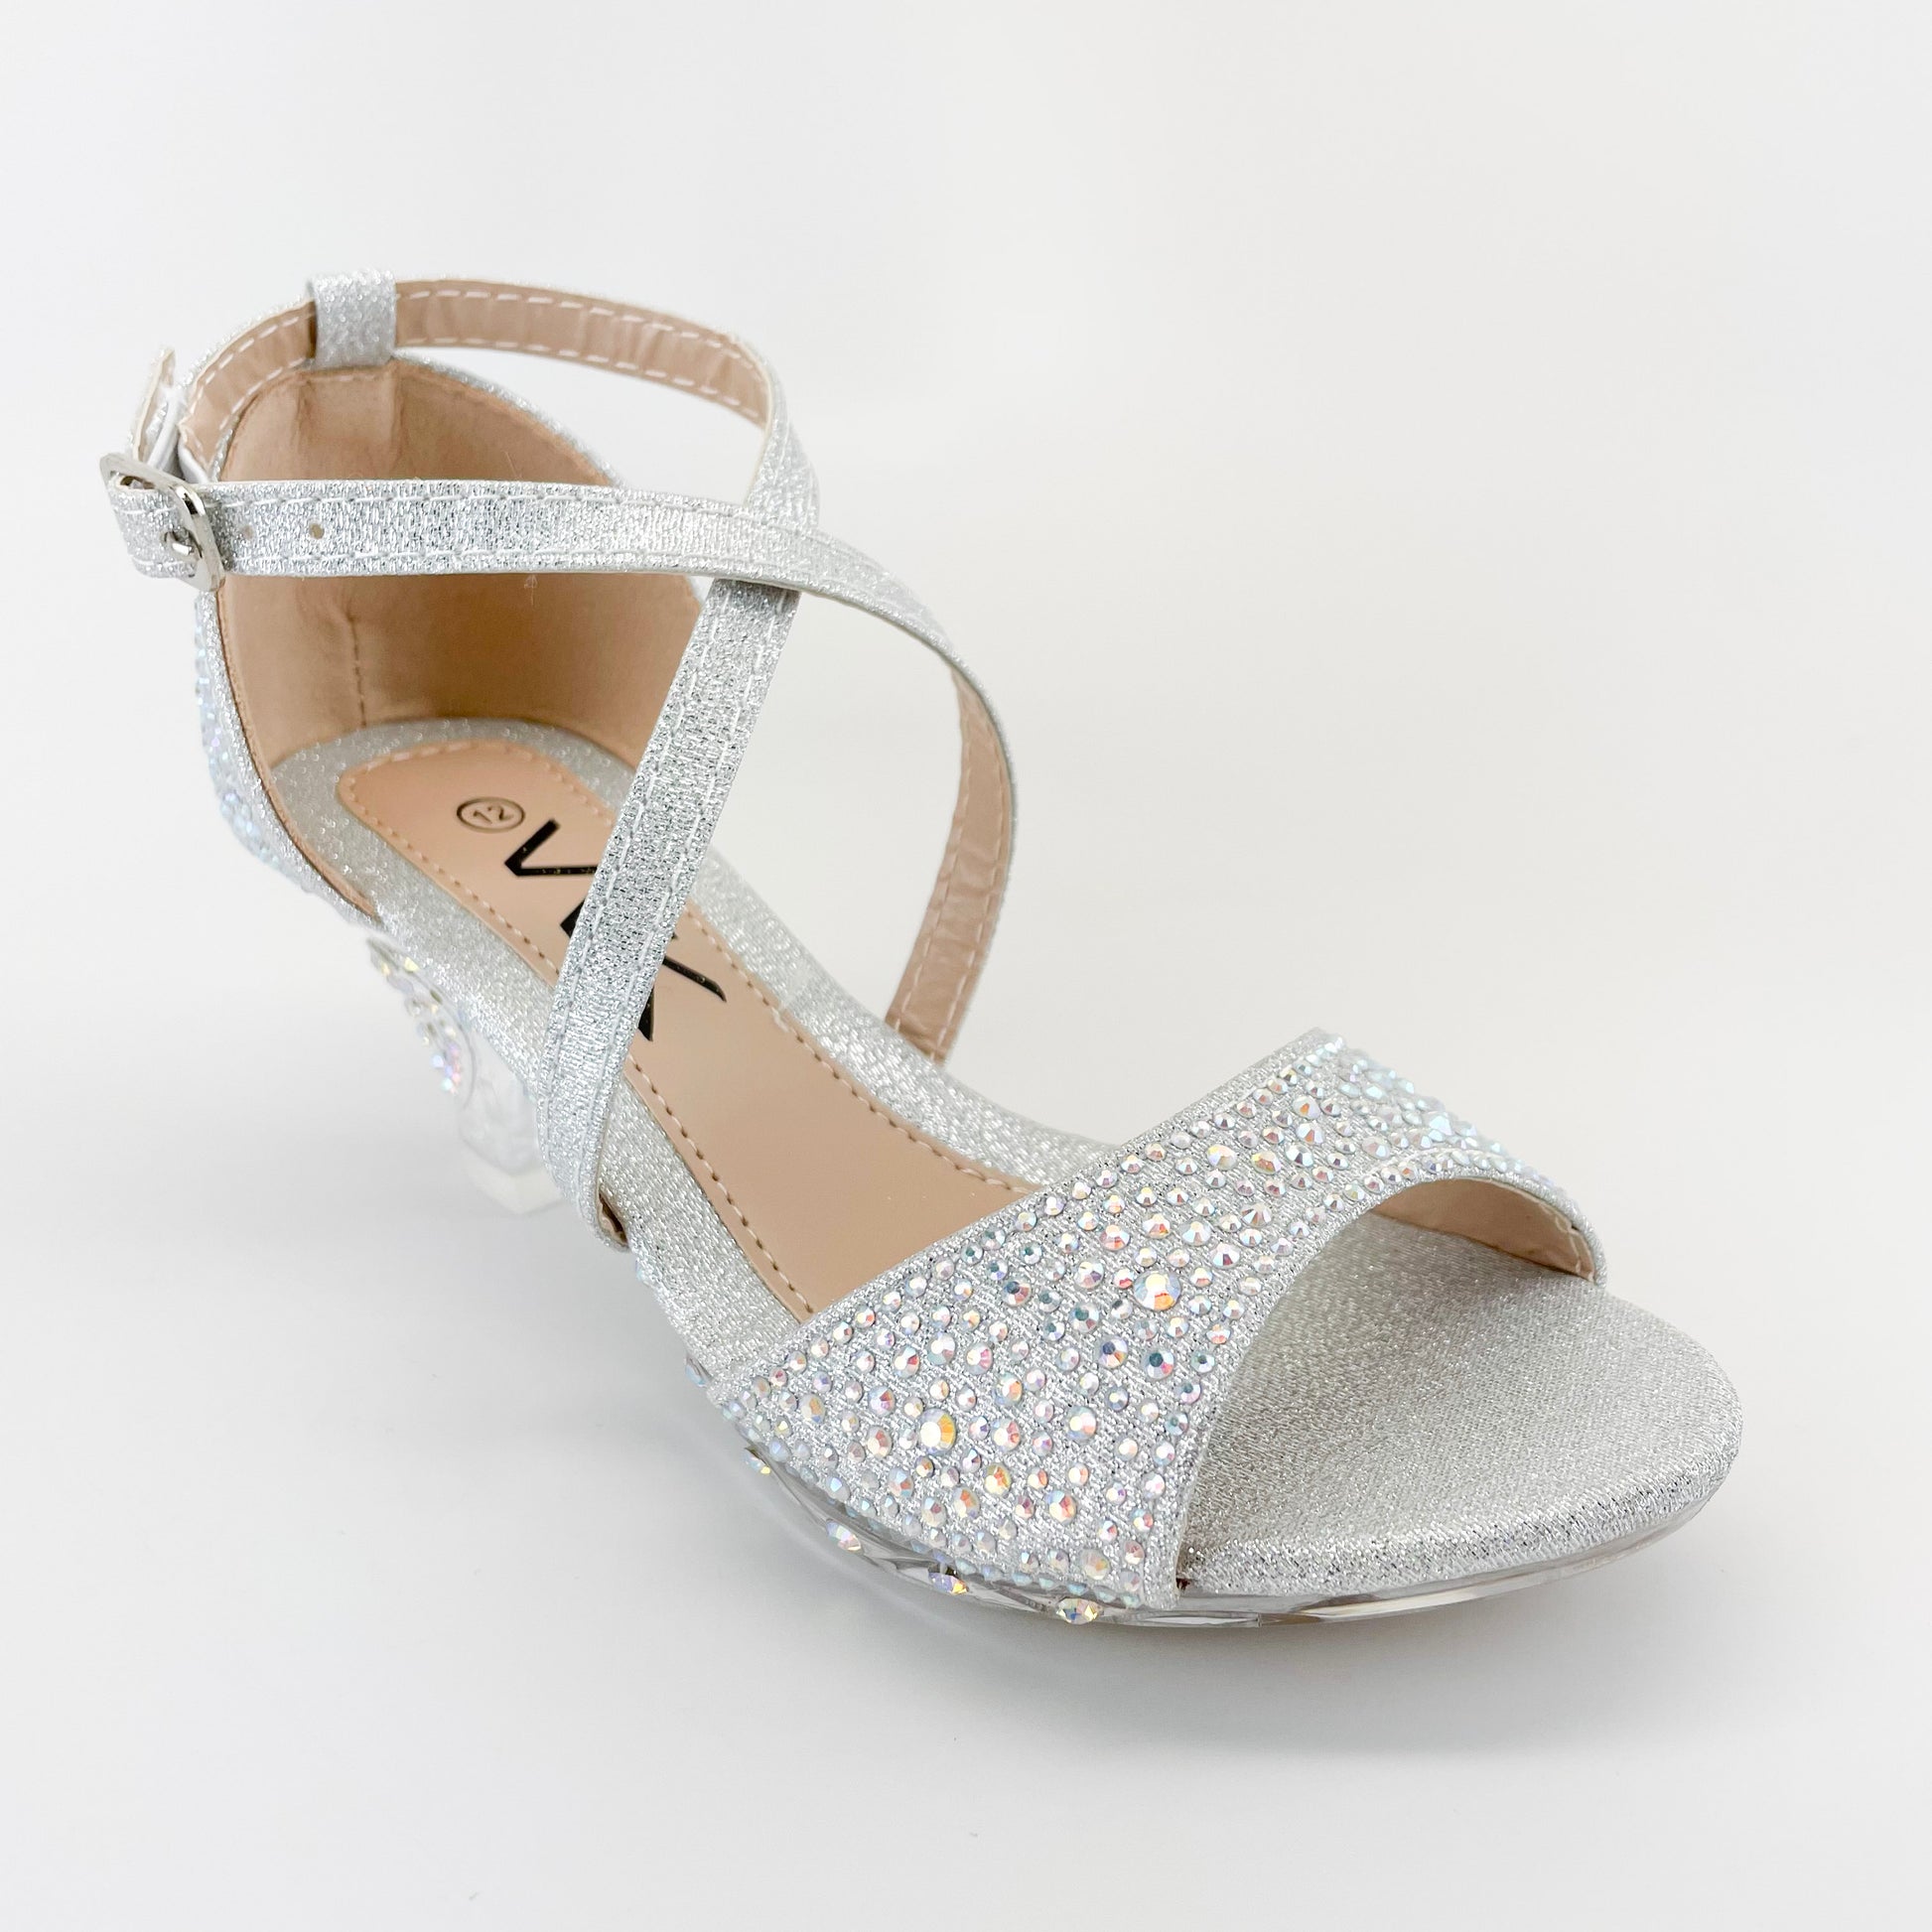 wk cyrstal-20 silver girls clear heels with rhinestones for graduation wedding formal